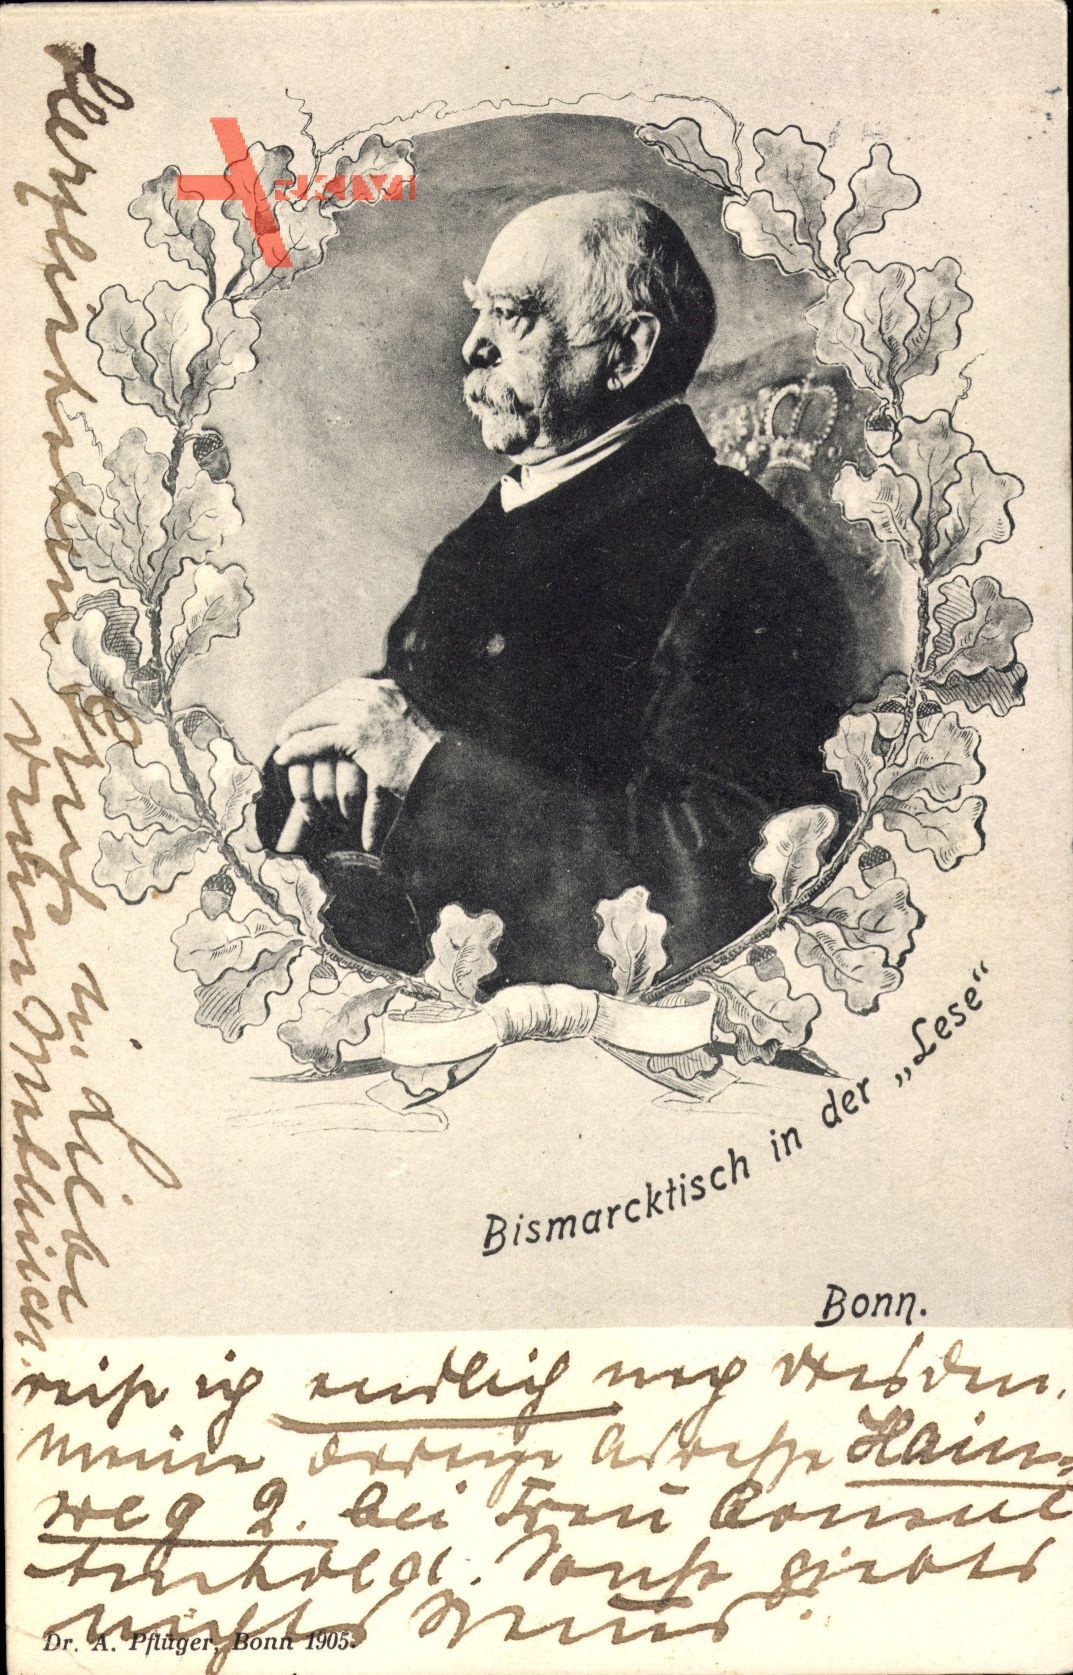 Fürst Otto von Bismarck, Bismarcktisch in der Lese, Bonn